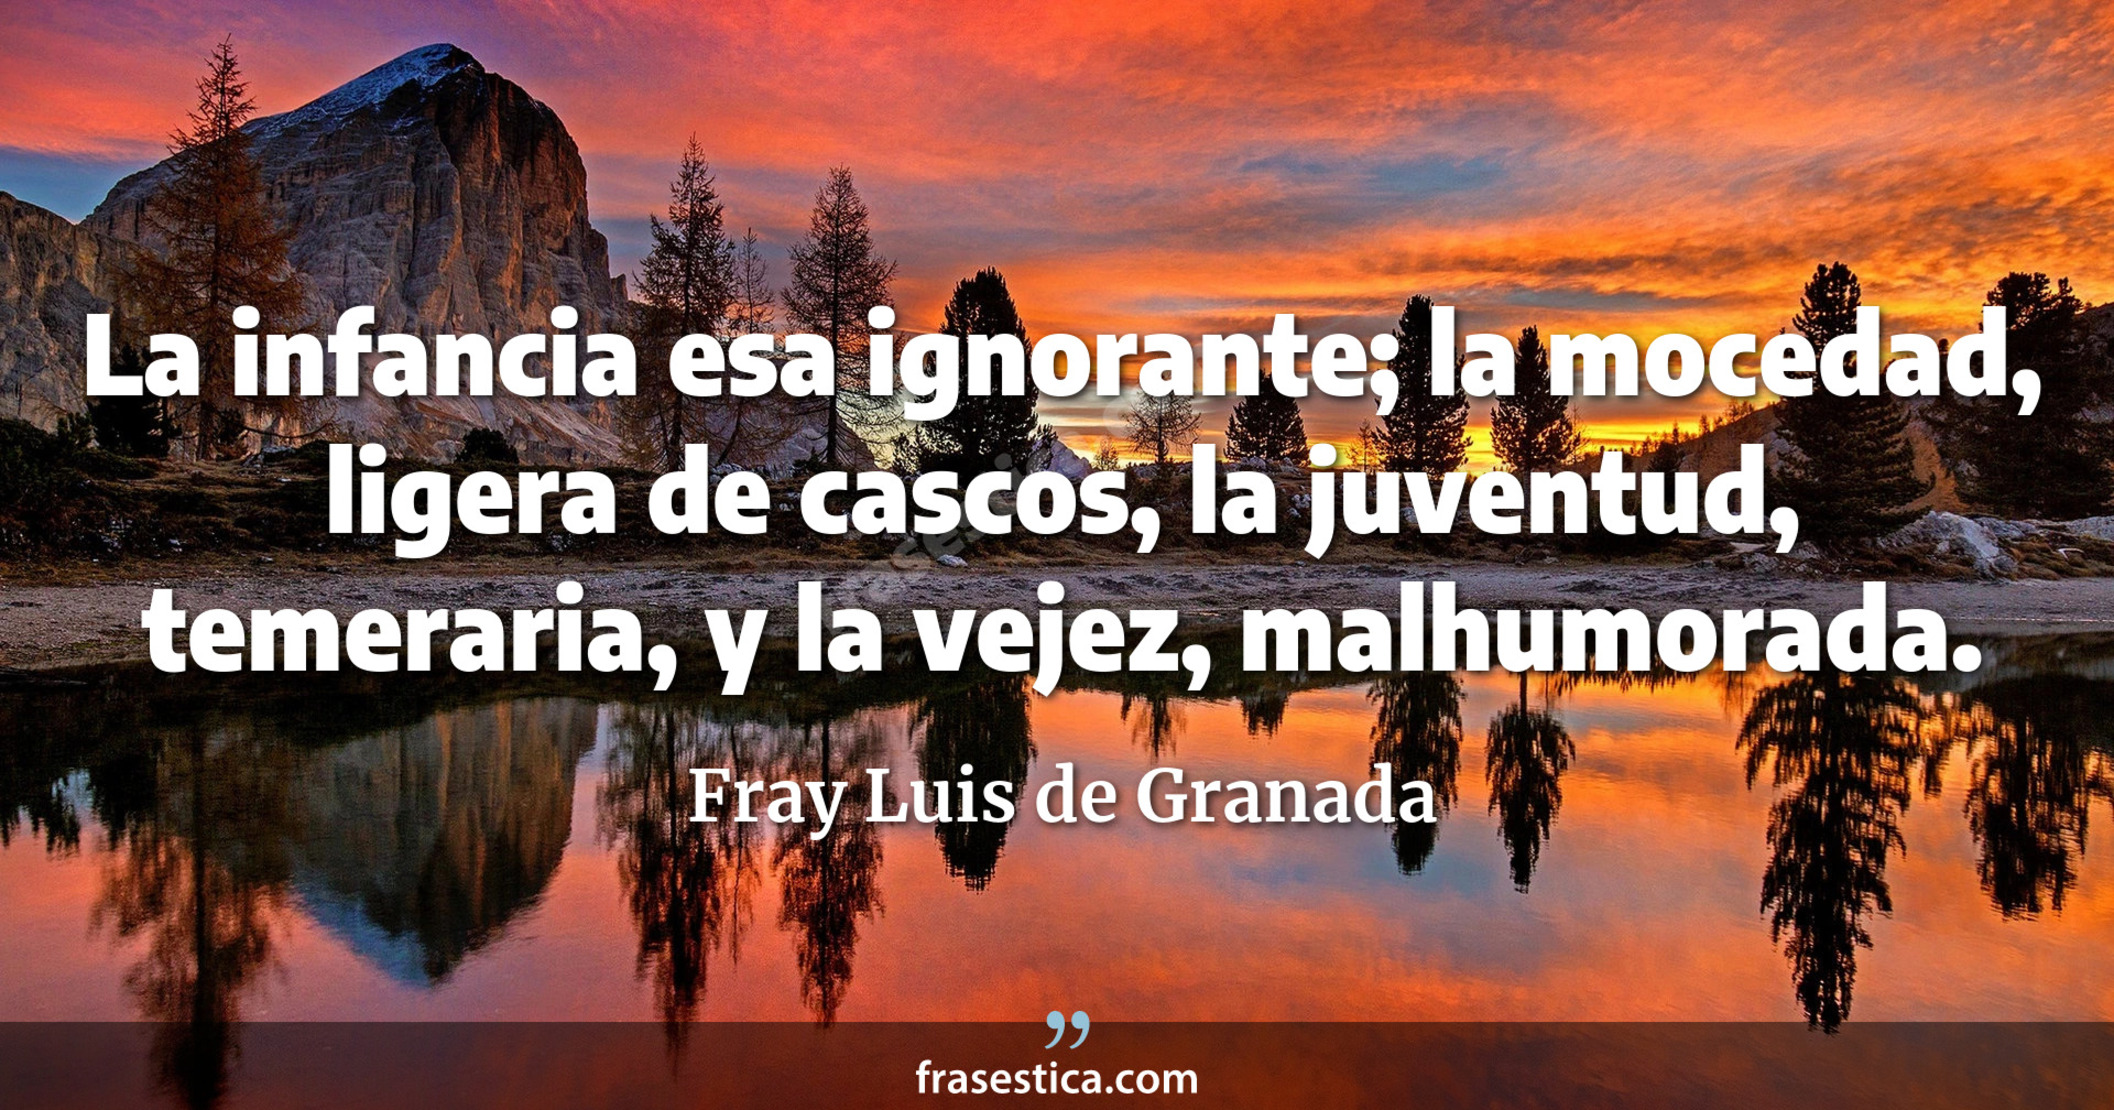 La infancia esa ignorante; la mocedad, ligera de cascos, la juventud, temeraria, y la vejez, malhumorada. - Fray Luis de Granada